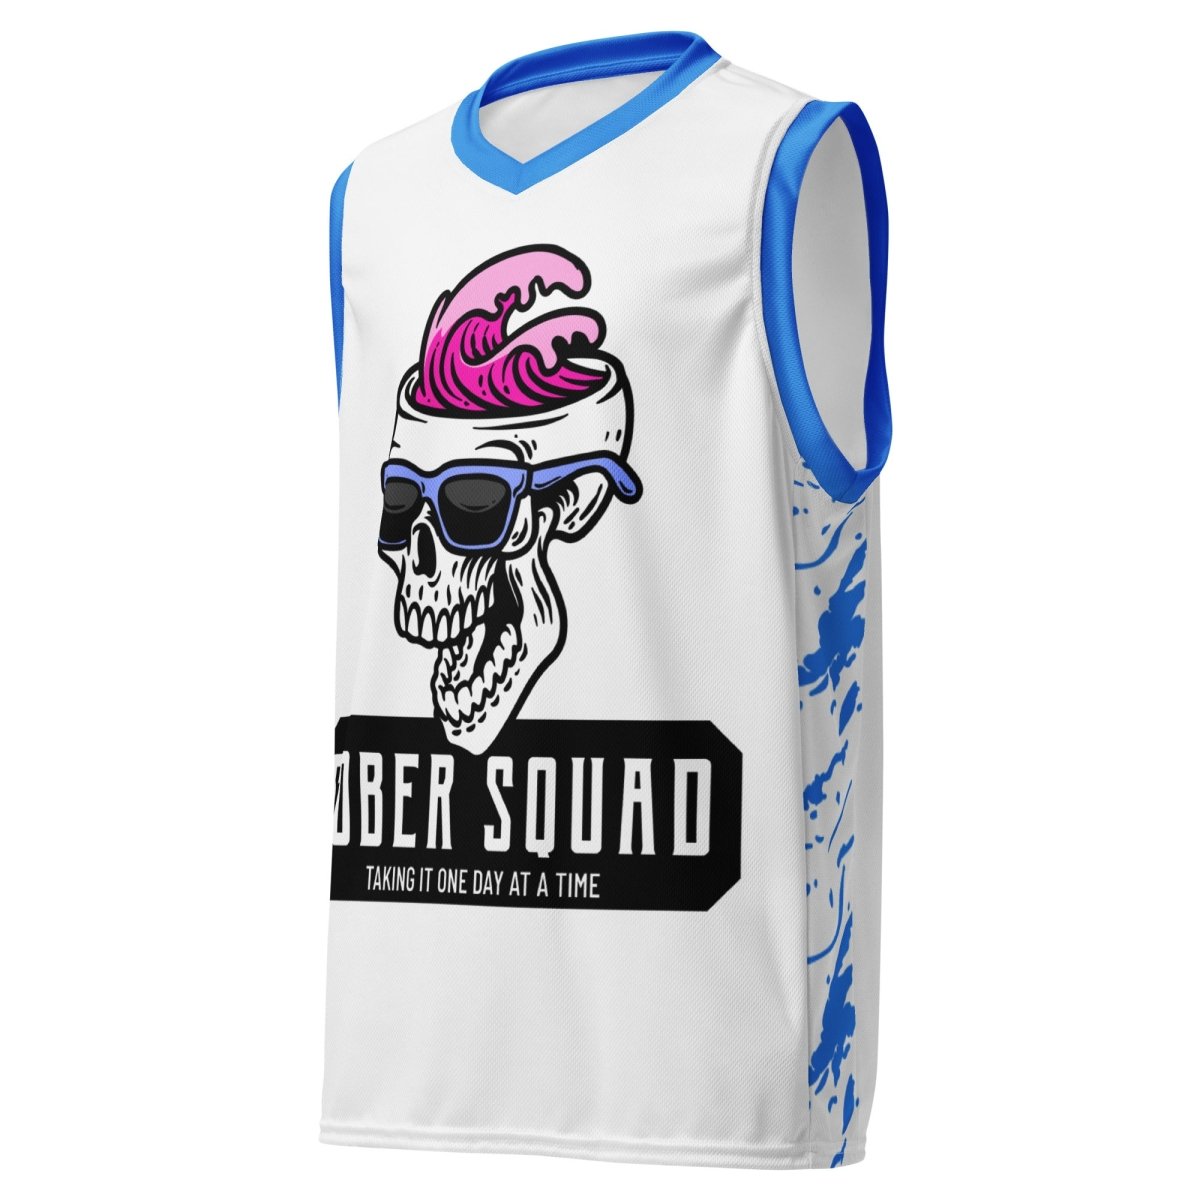 Sober Squad Skull Wave Basketball Jersey - Sobervation